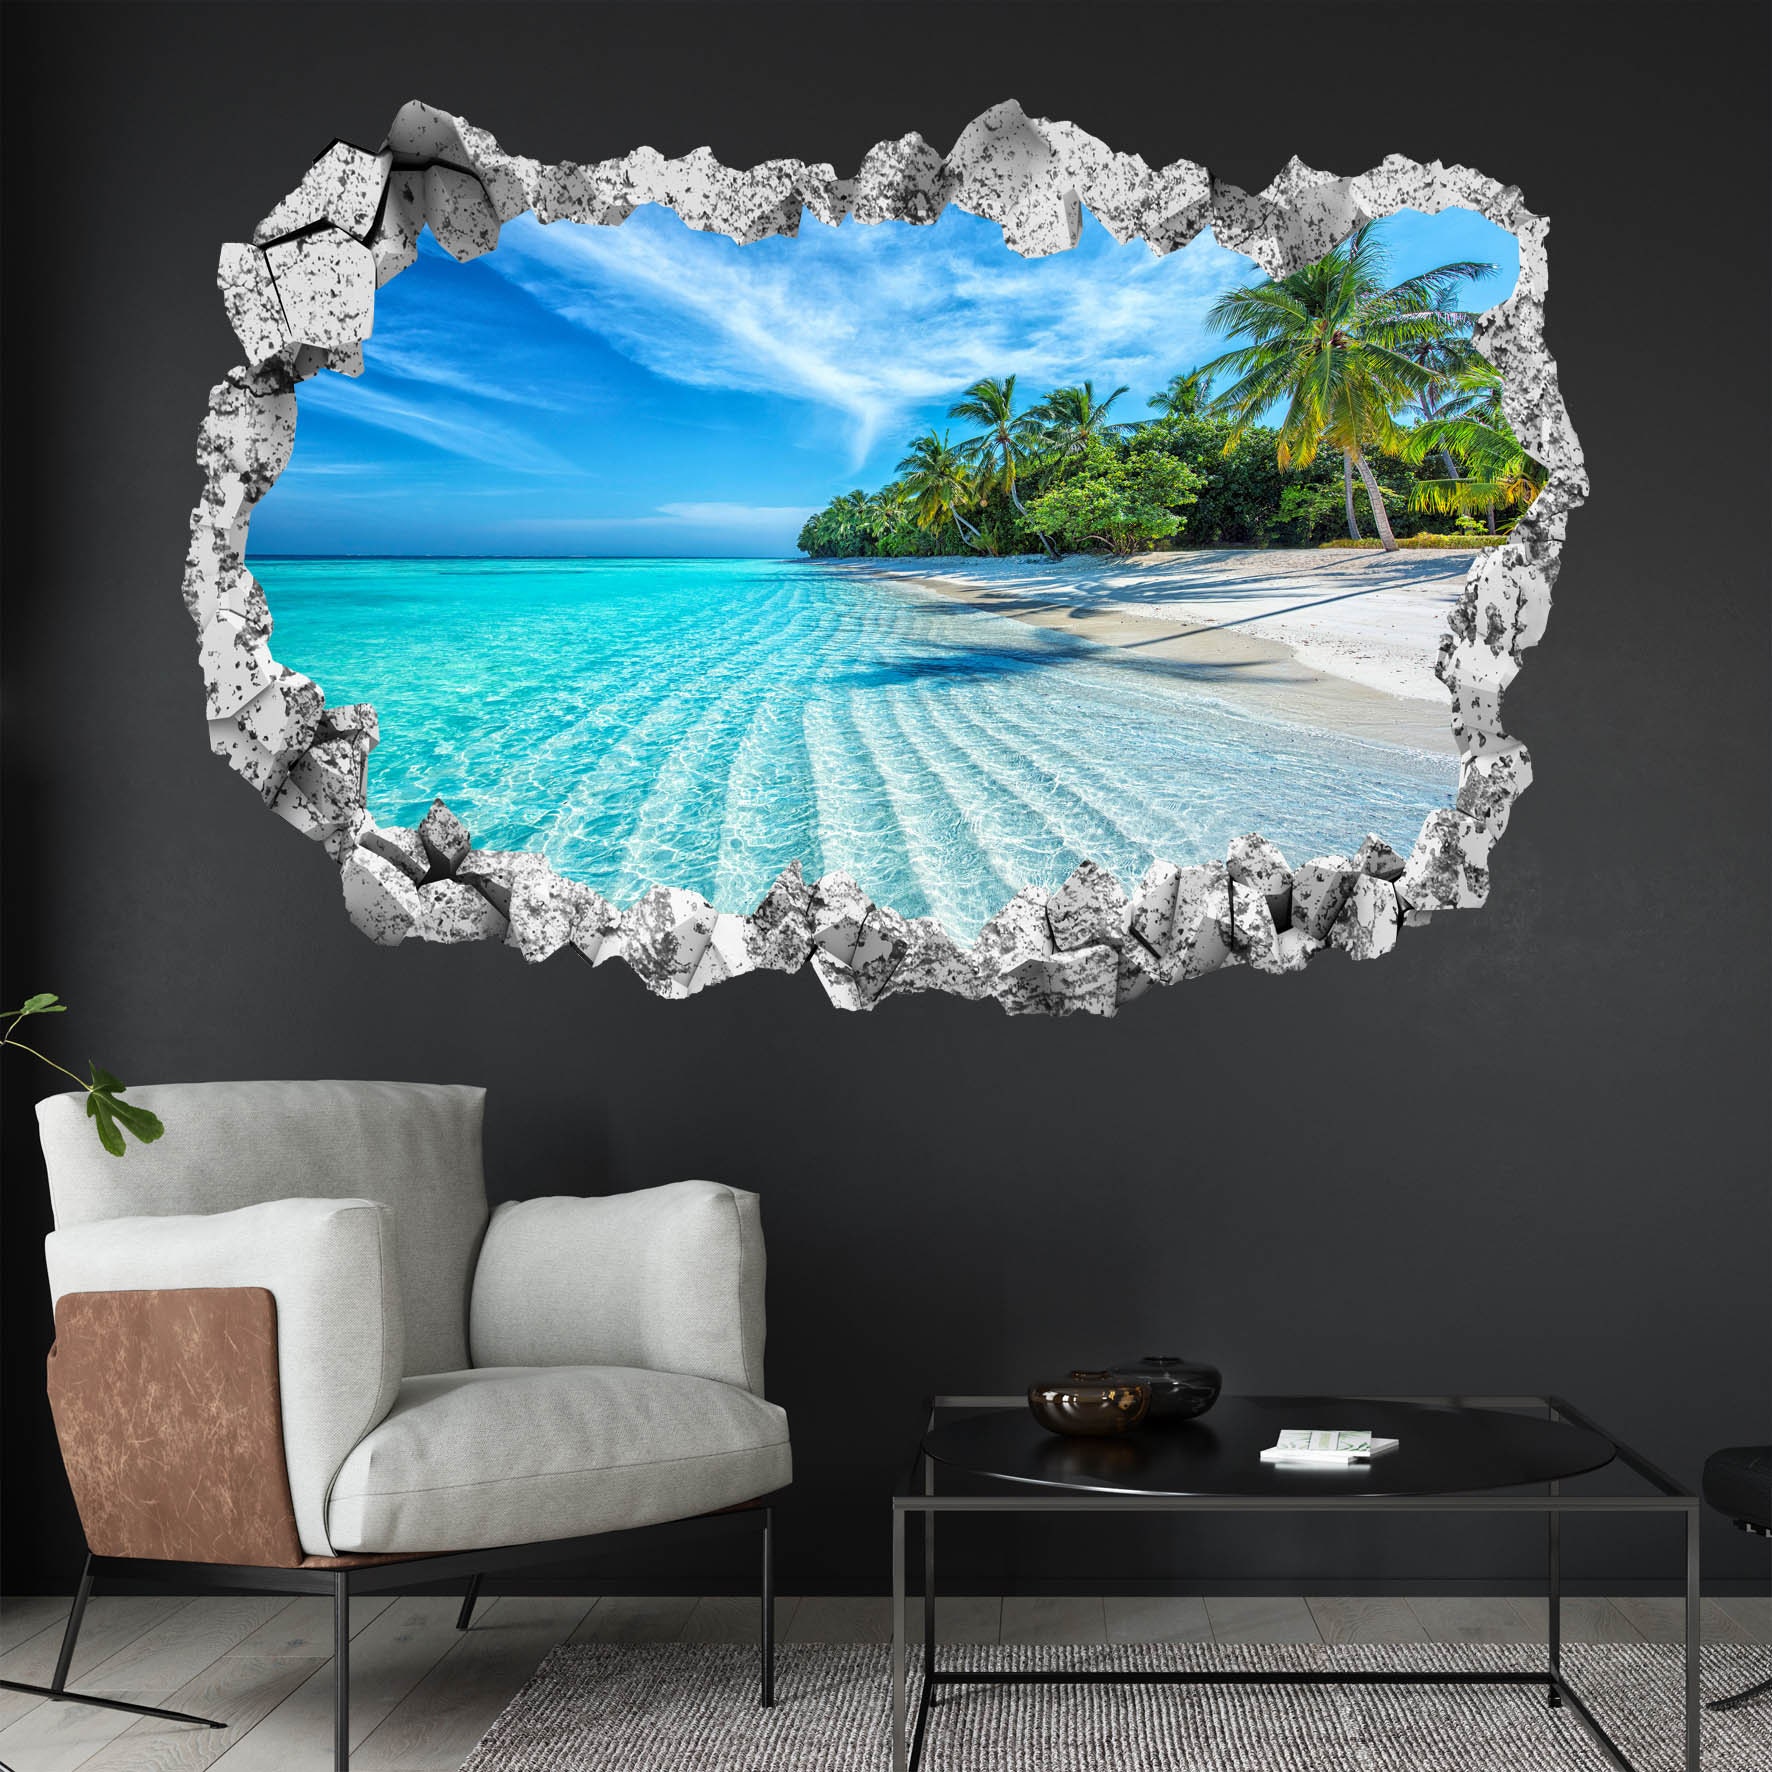 Cute-Beach, Palm Trees. Wall Sticker.